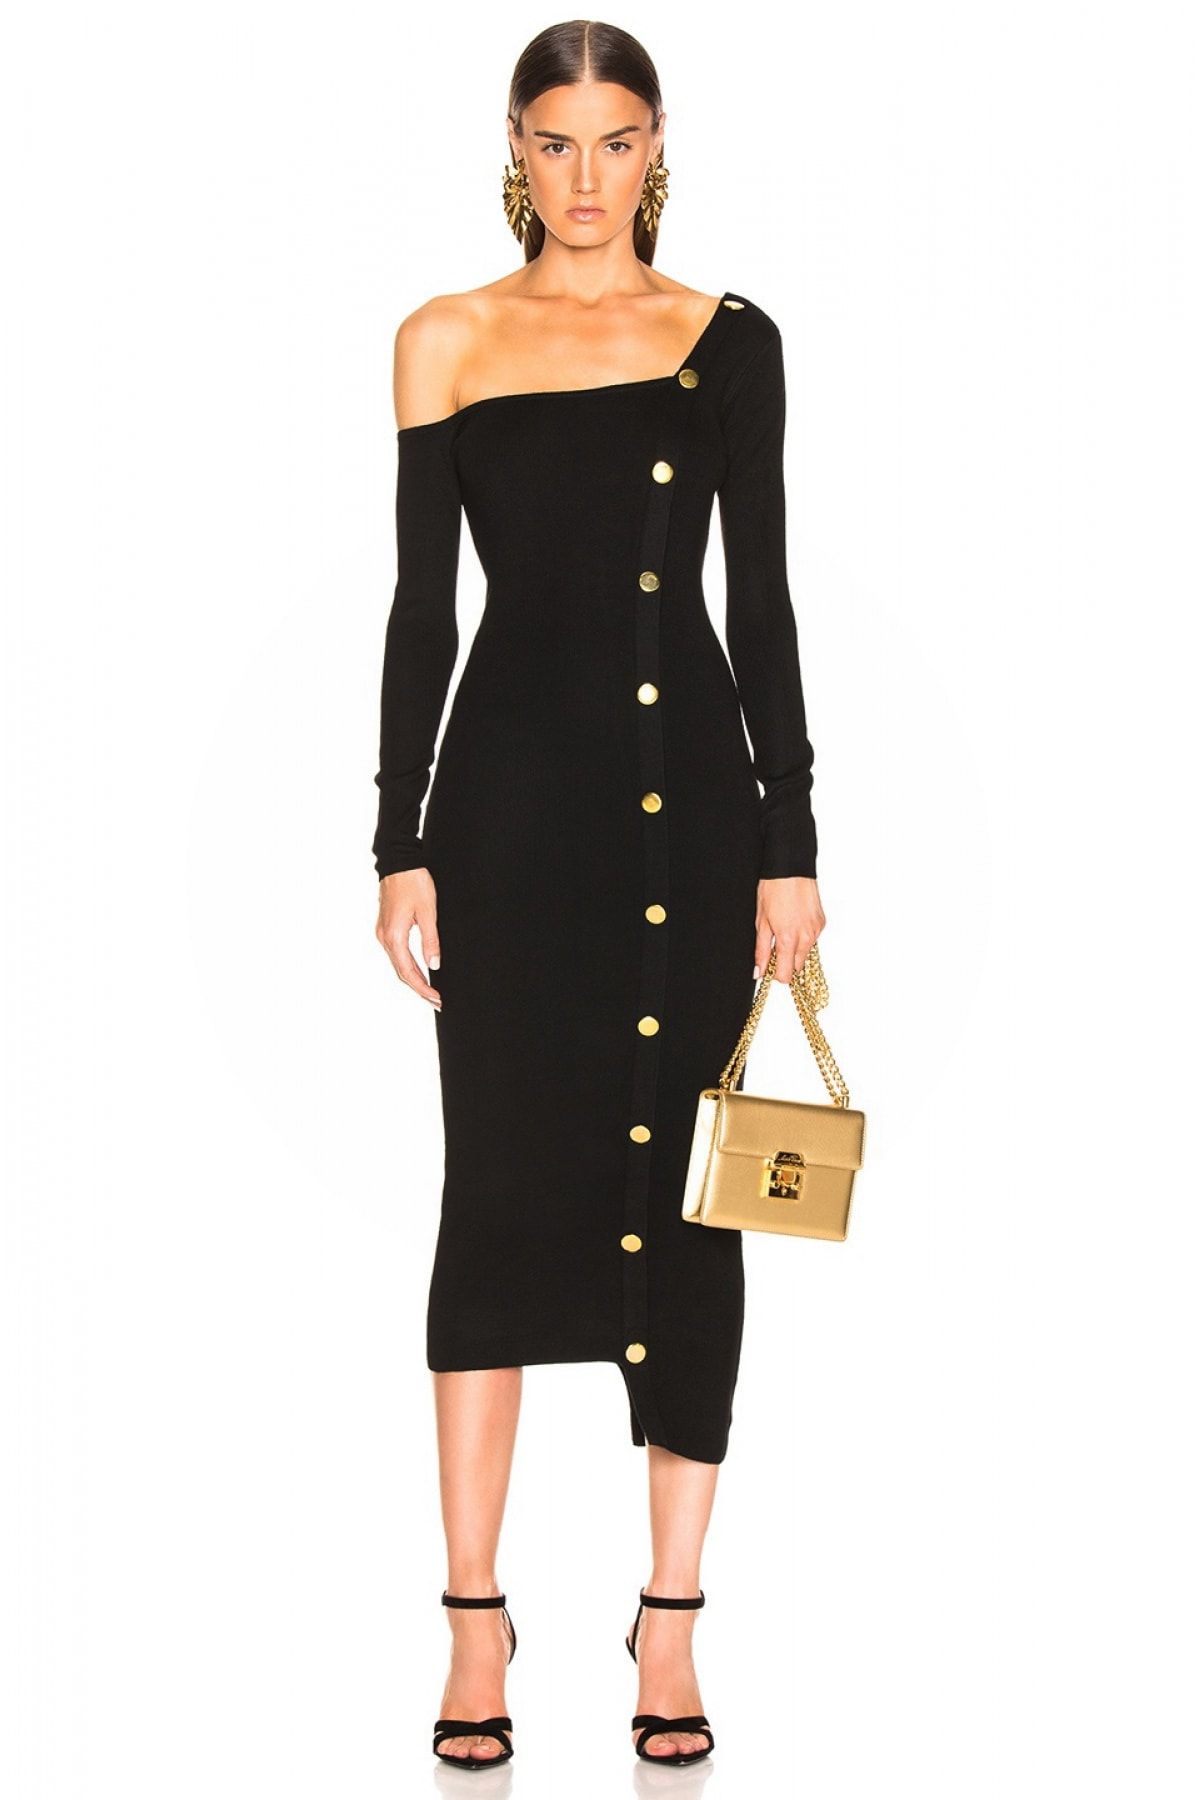 By Umut Design Kadın Siyah Düğme Detaylı Tek Omuz Elbise 4500616